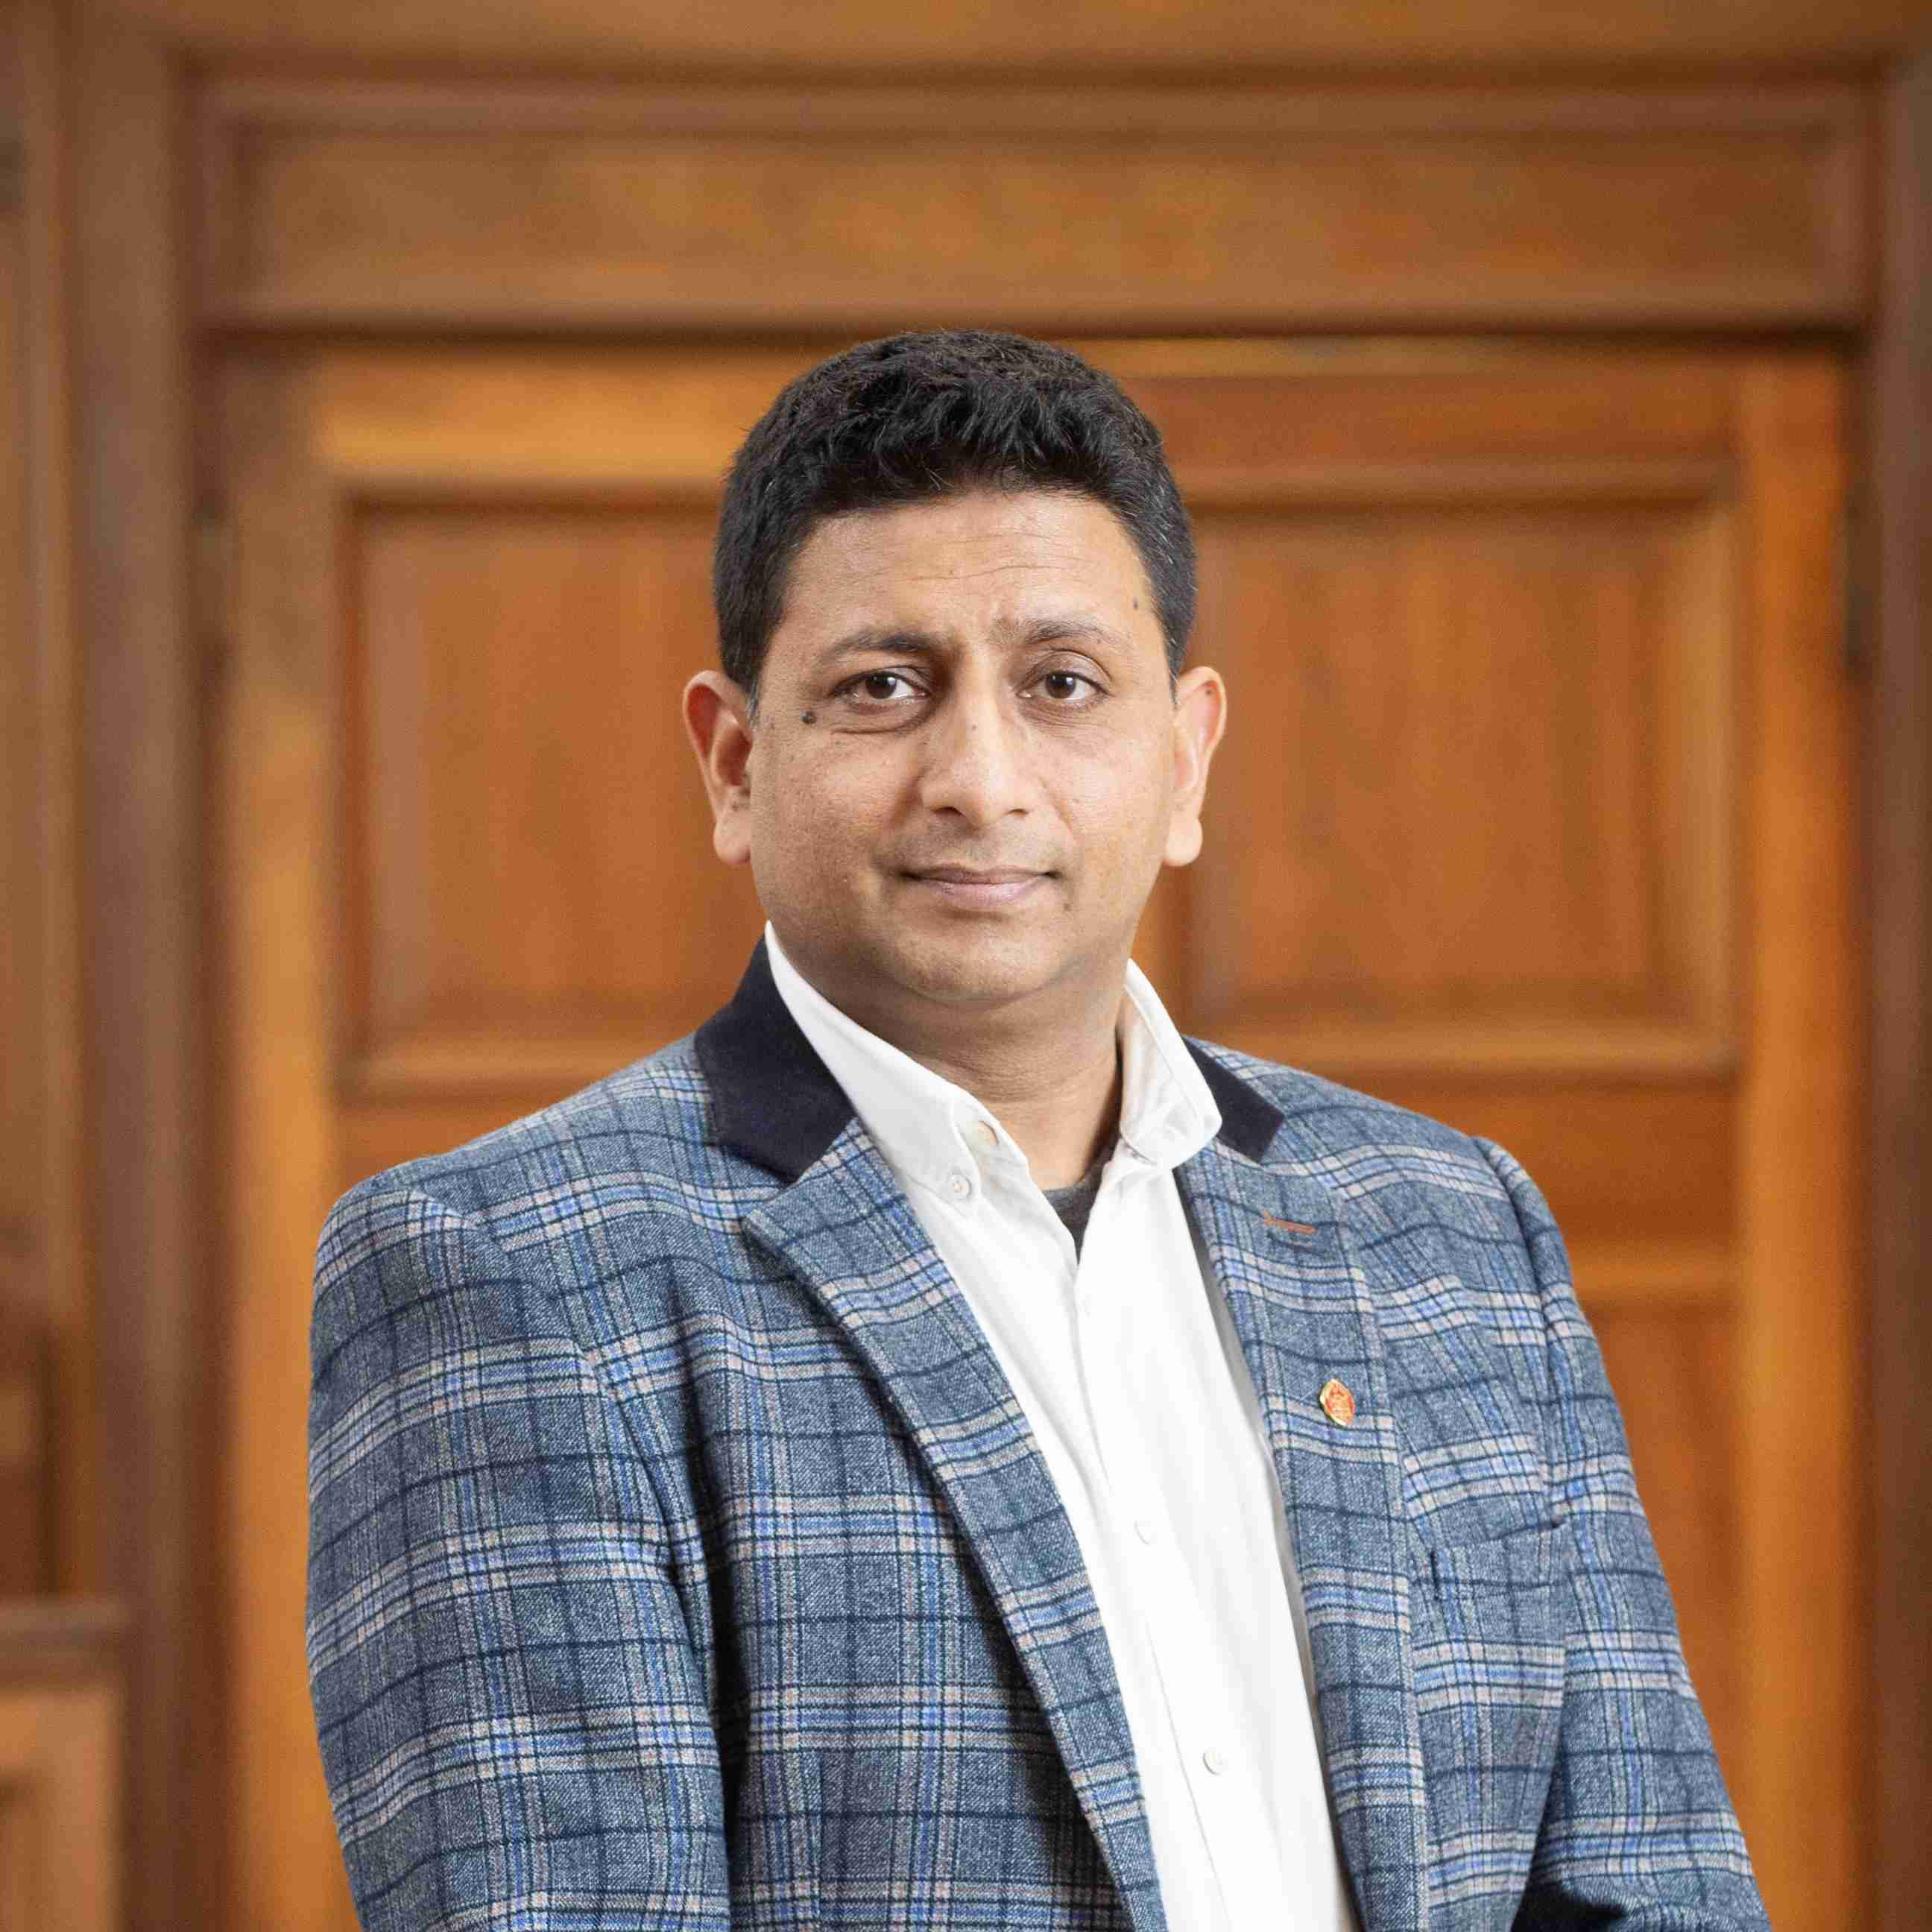 Profile image of Dr Abhishek Agarwal